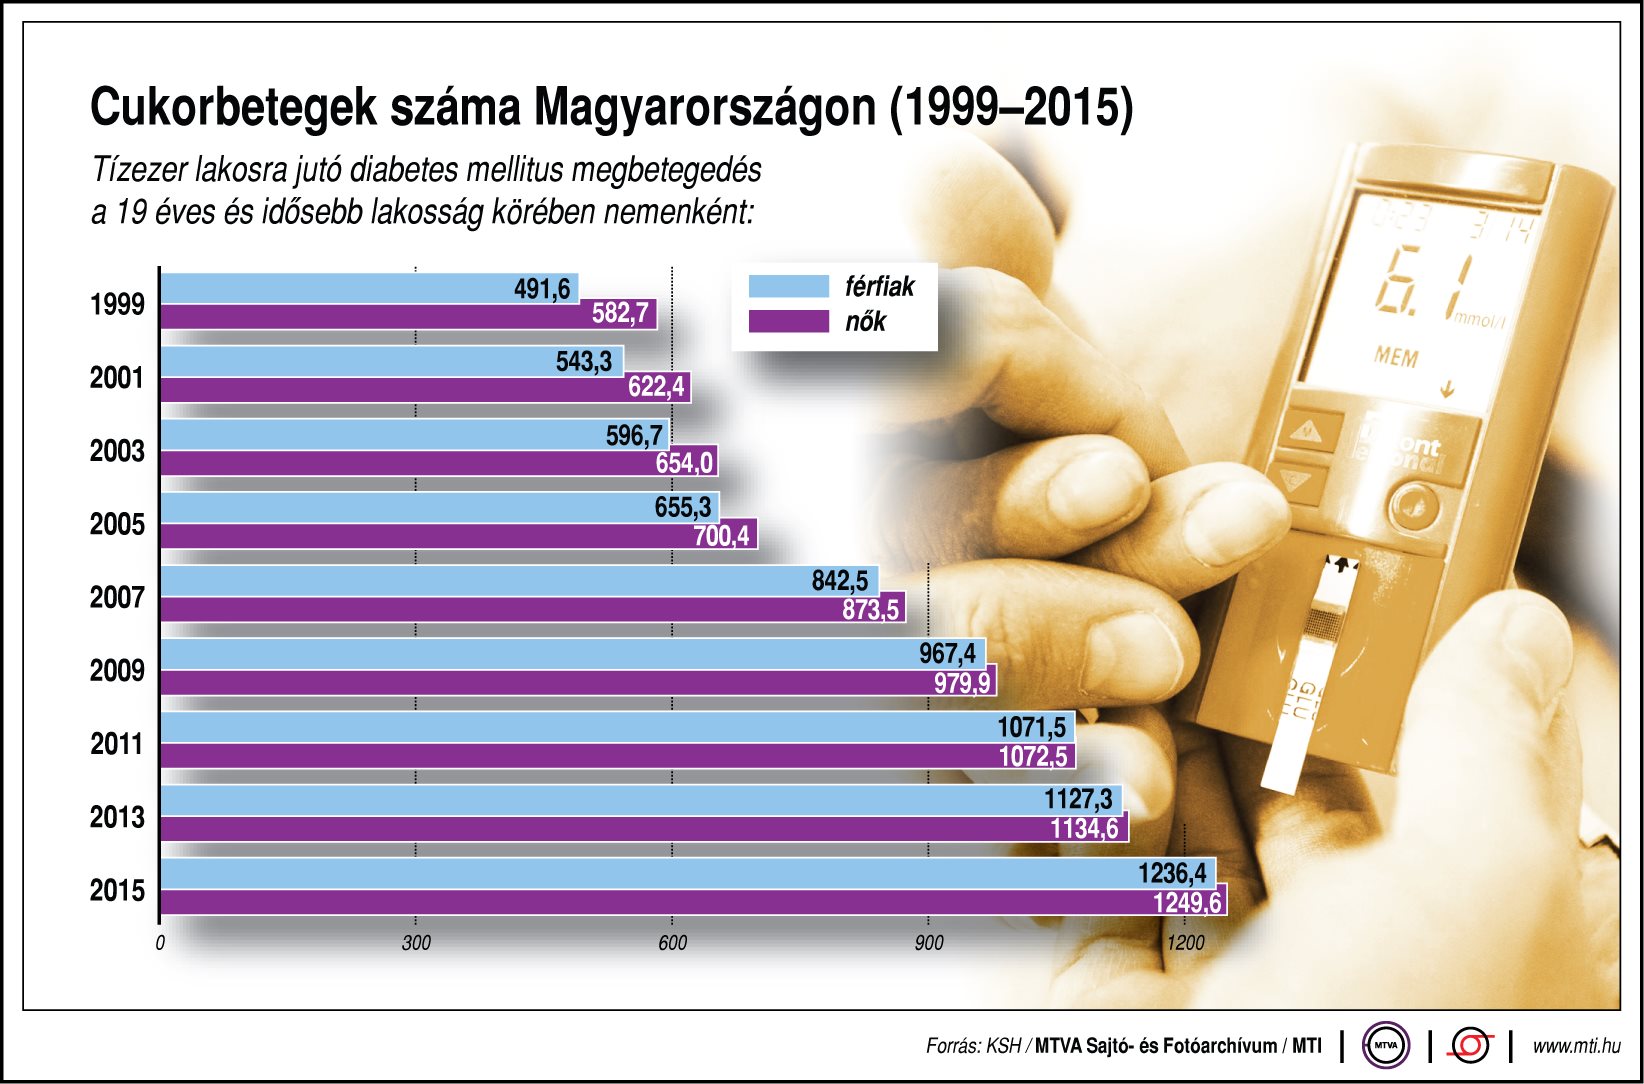 Több mint 1 millió cukorbeteg van az országban